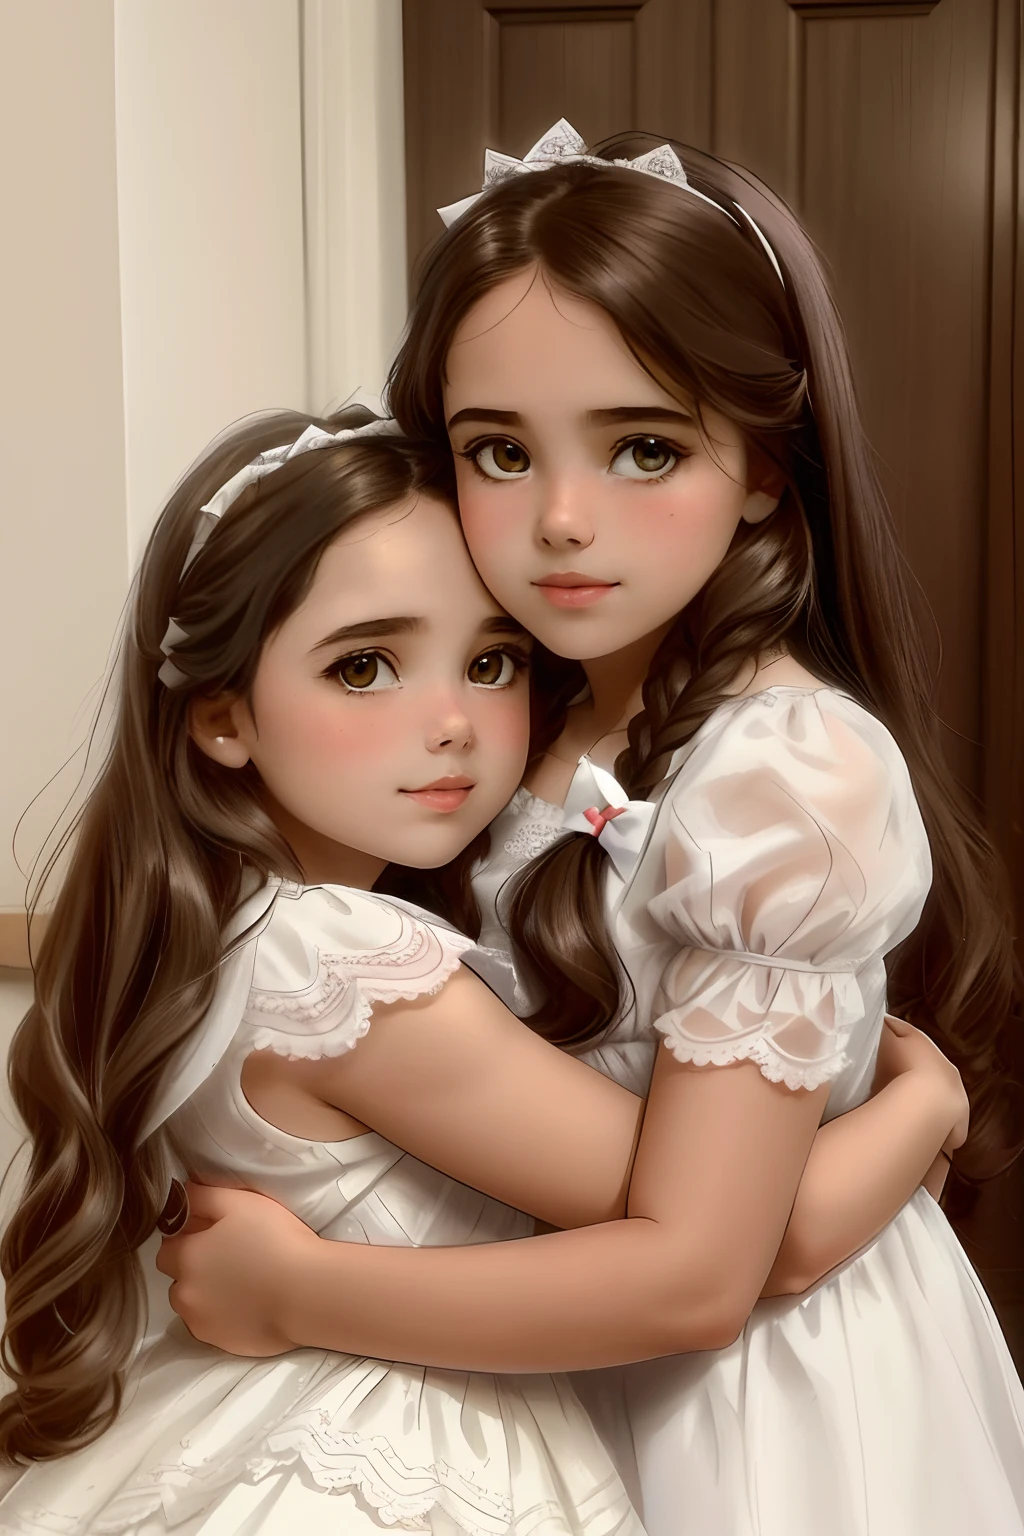 두 어린 소녀가 방에서 서로 포옹하고 있다, 아름다운 쌍둥이 쌍둥이, 발렌타인 셔플, 자매, 어린이, 하나 알리사 오메르, 두 땋은 머리 헤어 스타일, 어린이들, 아름다운 쌍둥이 쌍둥이 portrait, 아름다운 소녀들, 두 소녀, 좋다, 흰 거즈 드레스를 입은 천사들, alena aenami 그리고 lilia alvarado, 그리고, 귀여운 소녀들, 결합된 쌍둥이